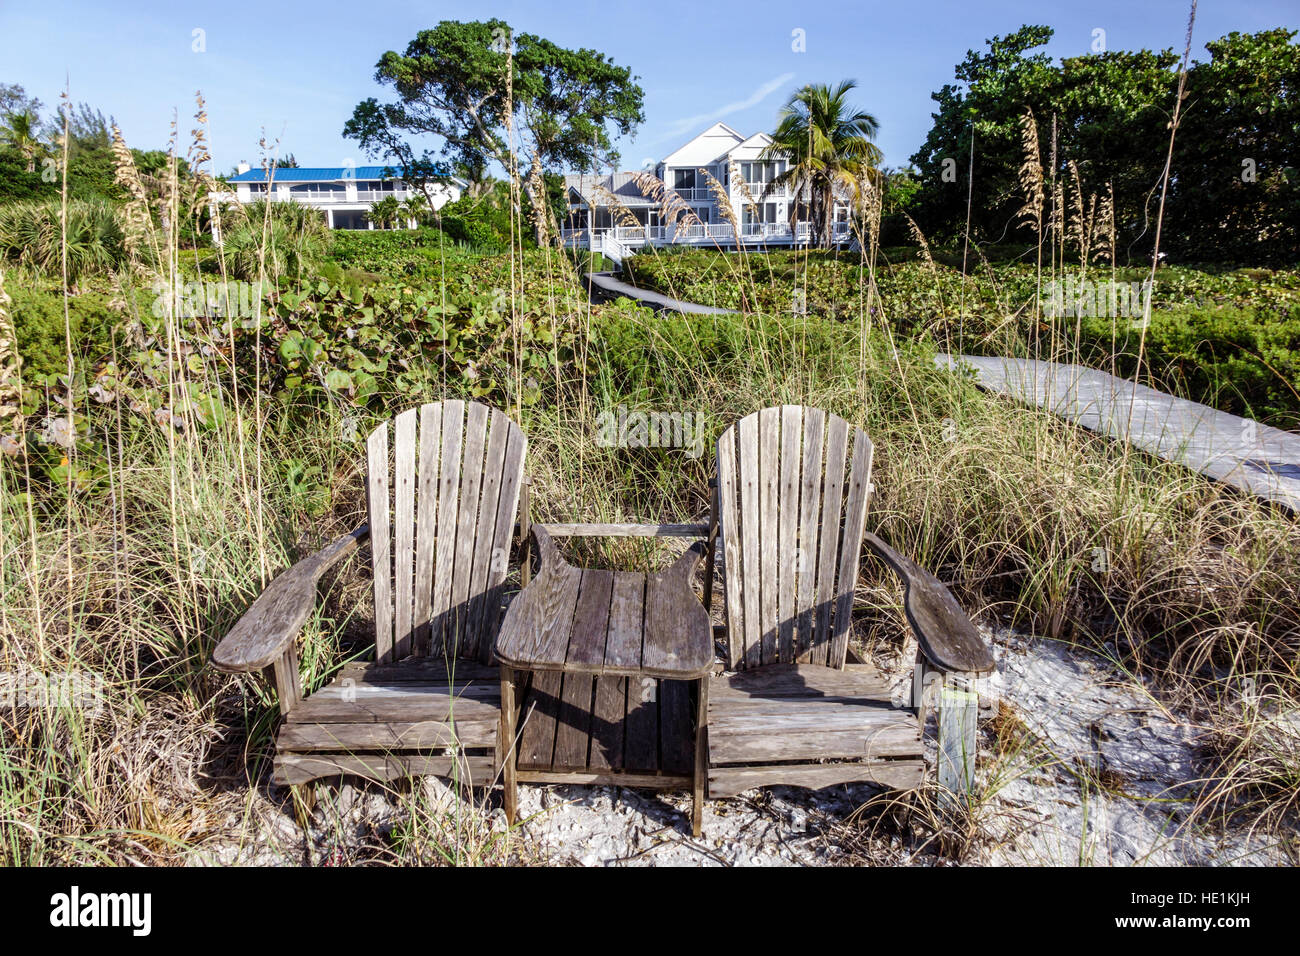 Florida Sanibel Island,plage,Golfe du Mexique,chaises Adirondack,maisons,maisons,FL161129219 Banque D'Images